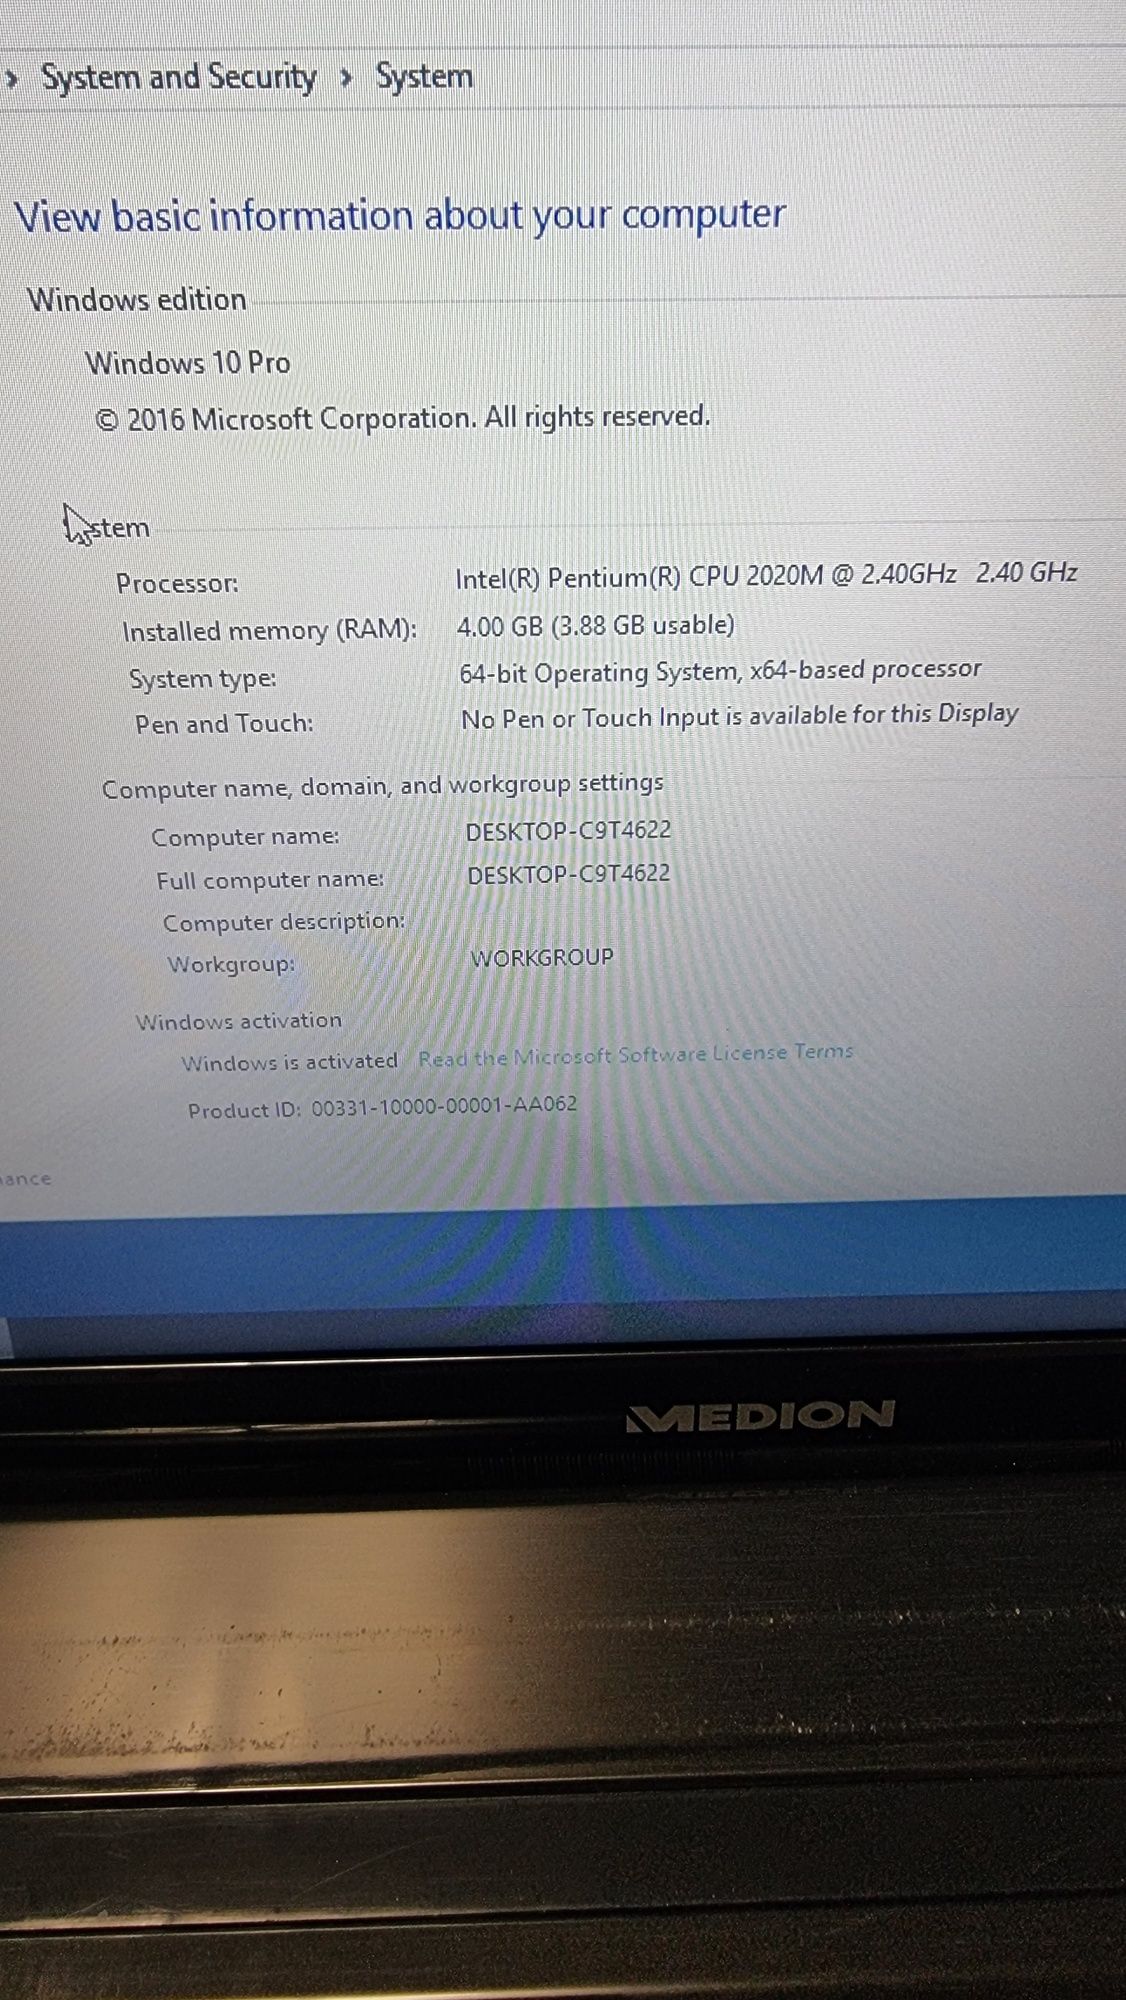 Лаптоп Medion E6234 15,6